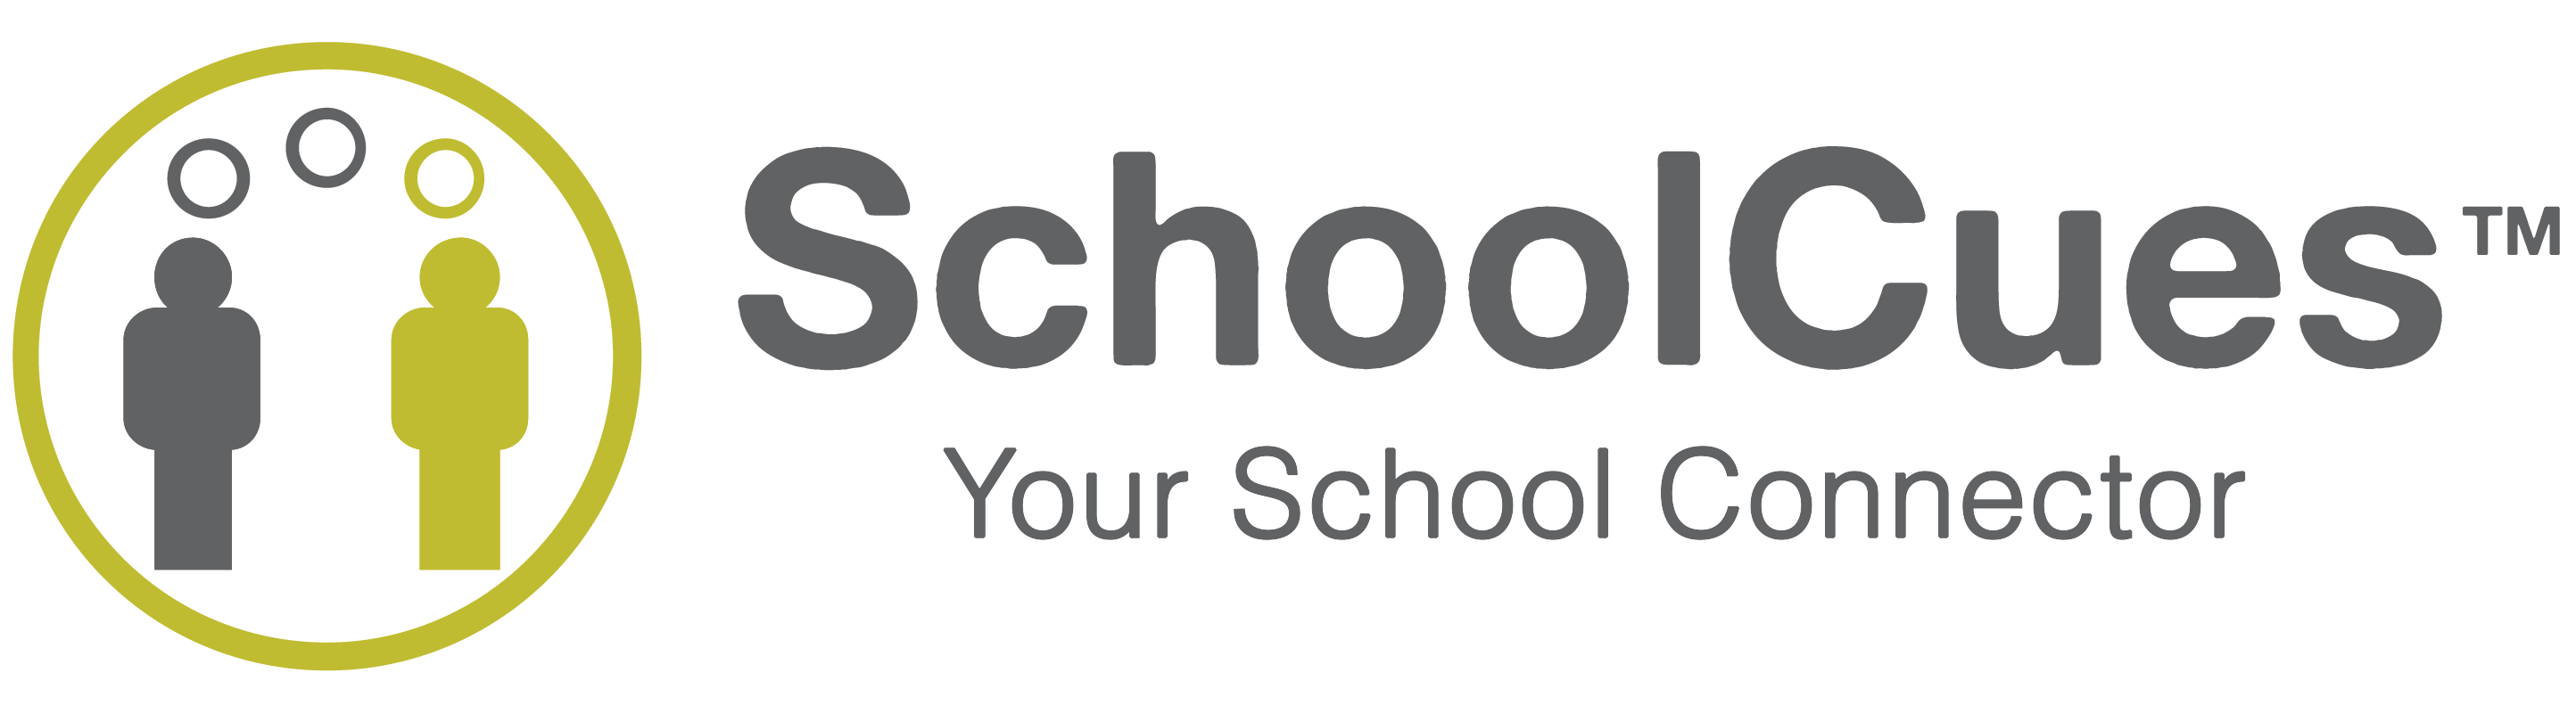 SchoolCues, Association of Classical Christian Schools (ACCS)